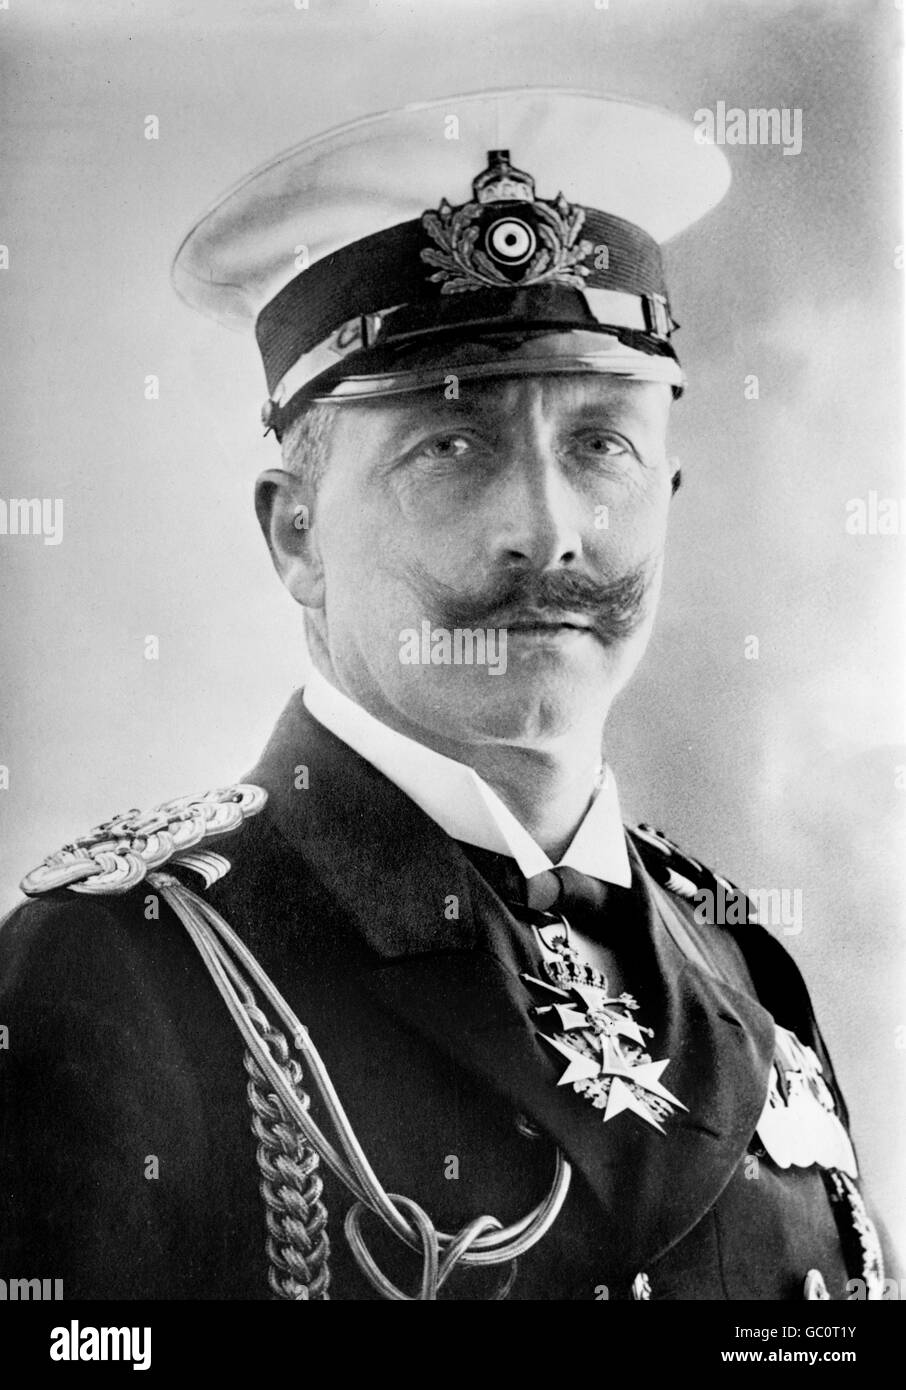 el-kaiser-wilhelm-ii-1859-1941-retrato-del-emperador-de-alemania-y-rey-de-prusia-vistiendo-uniforme-naval-foto-desde-el-servicio-de-noticias-bain-c1910-1915-gc0t1y.jpg